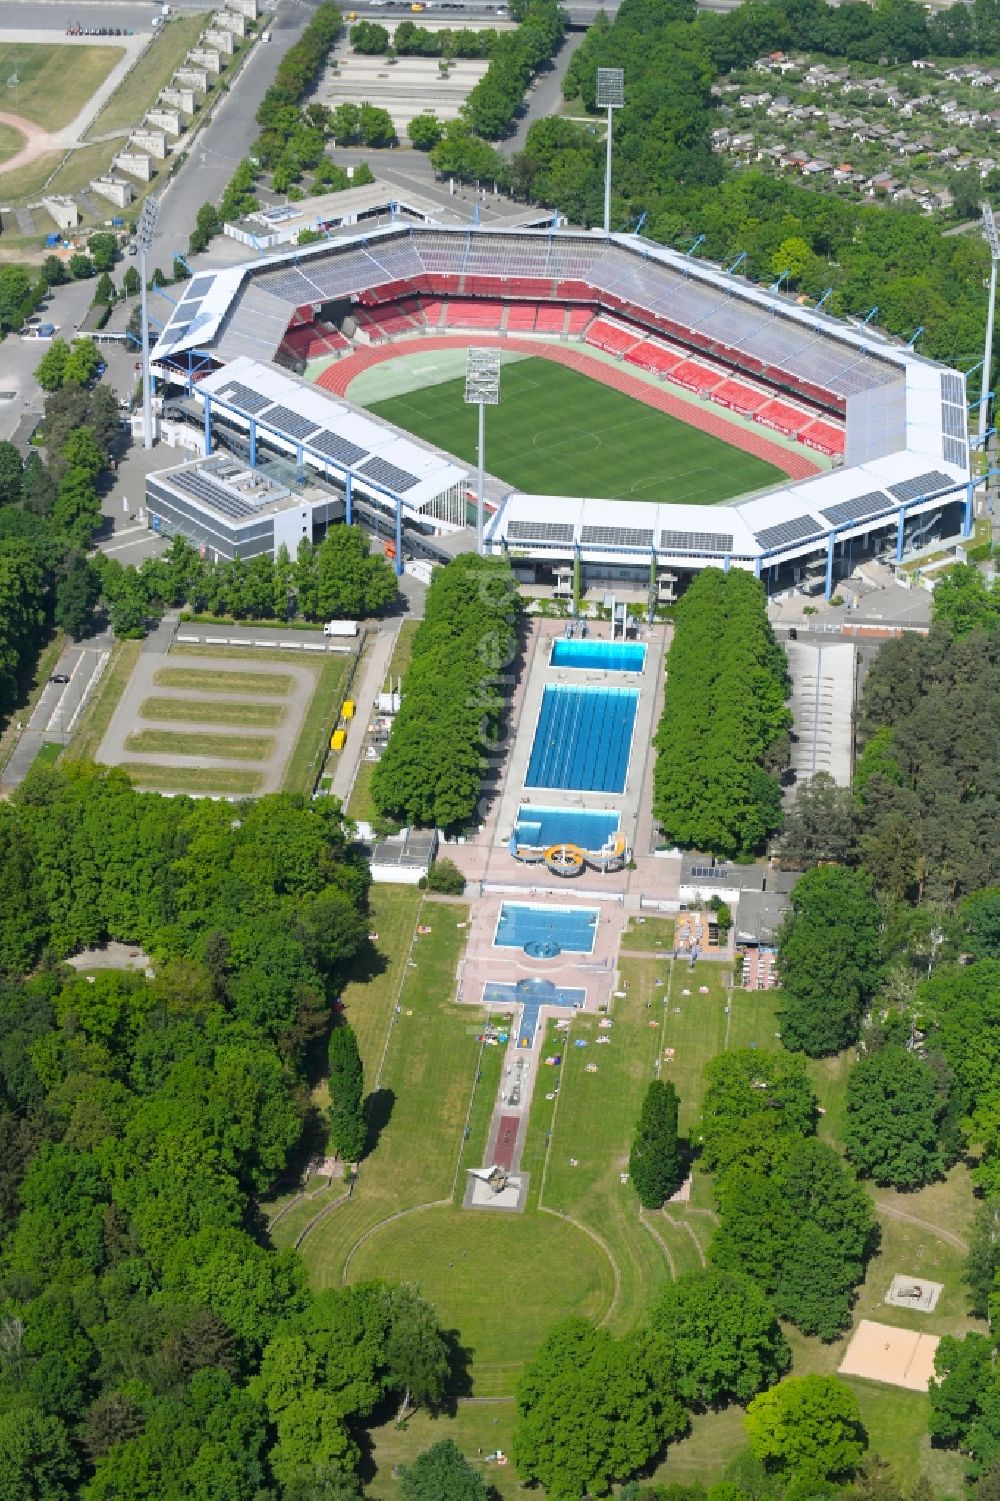 Nürnberg von oben - Schwimmbecken des Freibades Freibad Stadion in Nürnberg im Bundesland Bayern, Deutschland